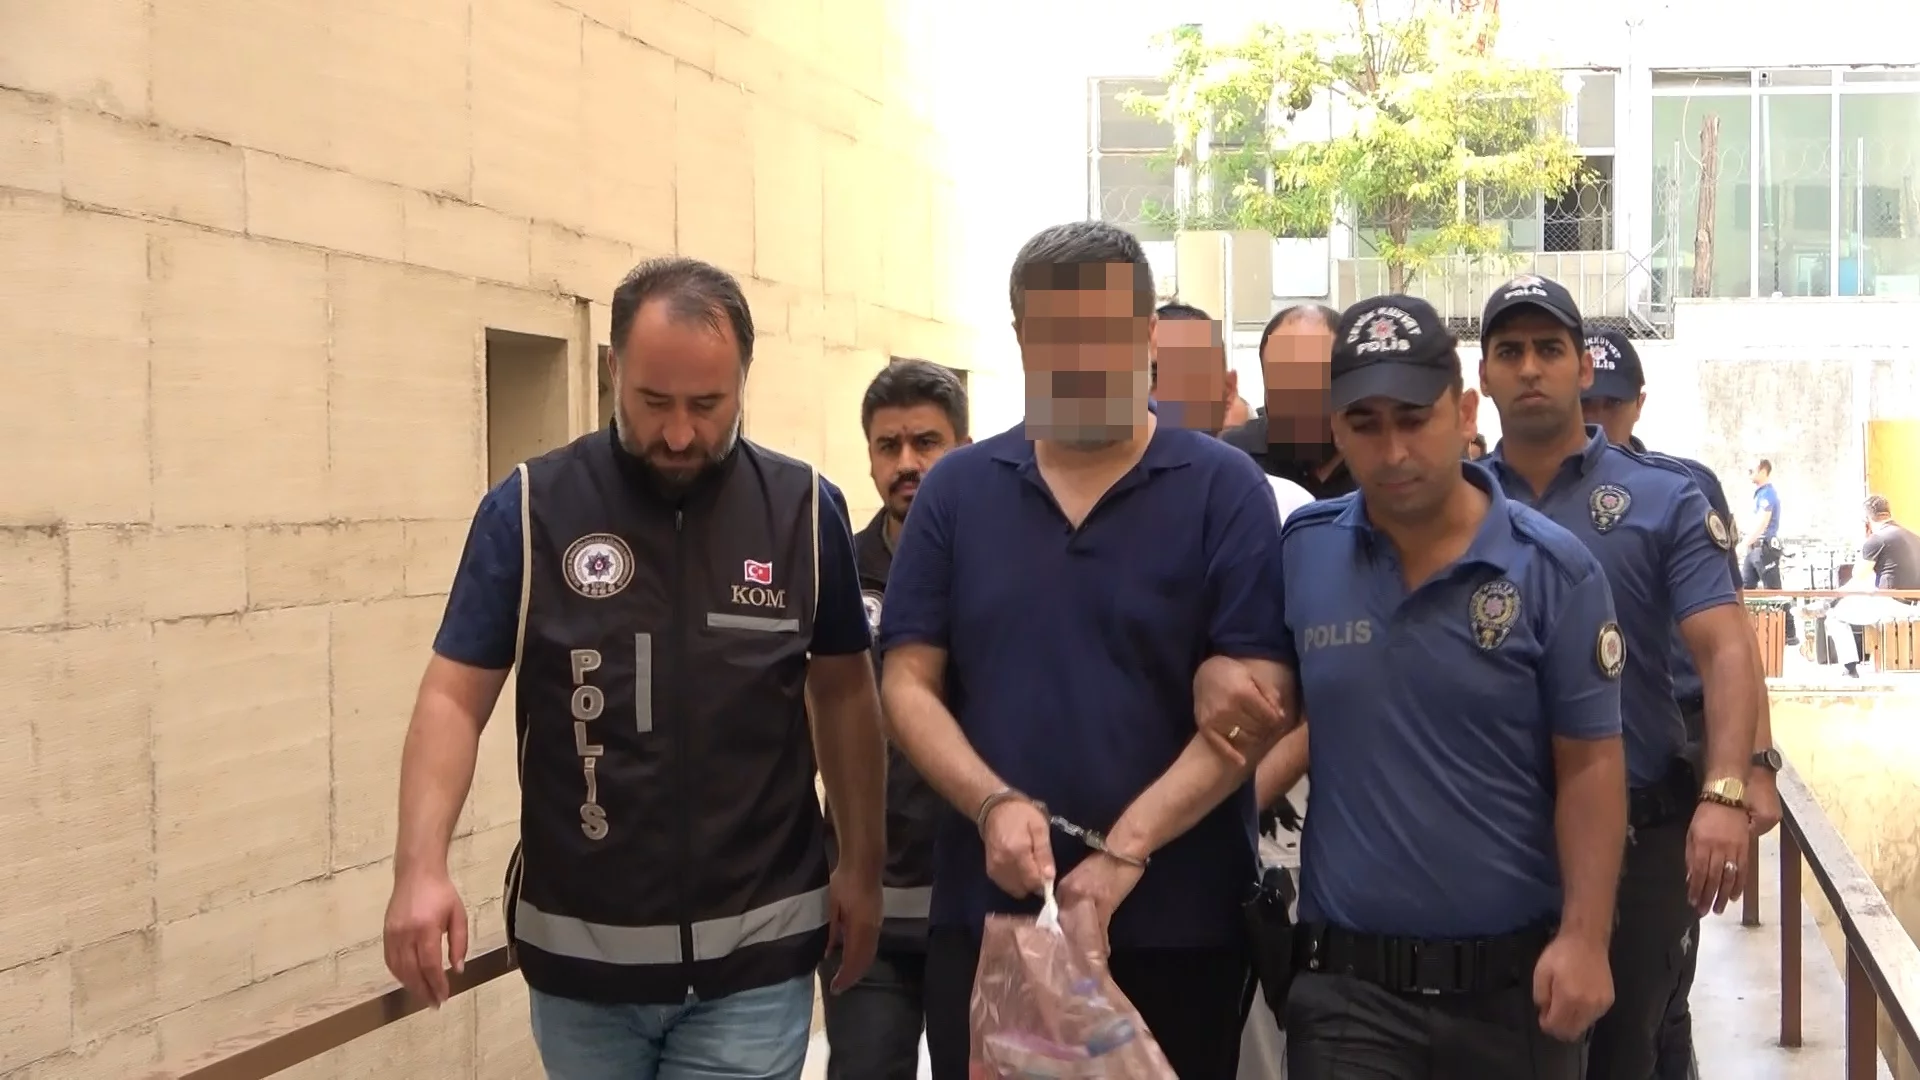 Bursa'daki 'tefecilik' operasyonunda yakalanan 13 kişi adliyede